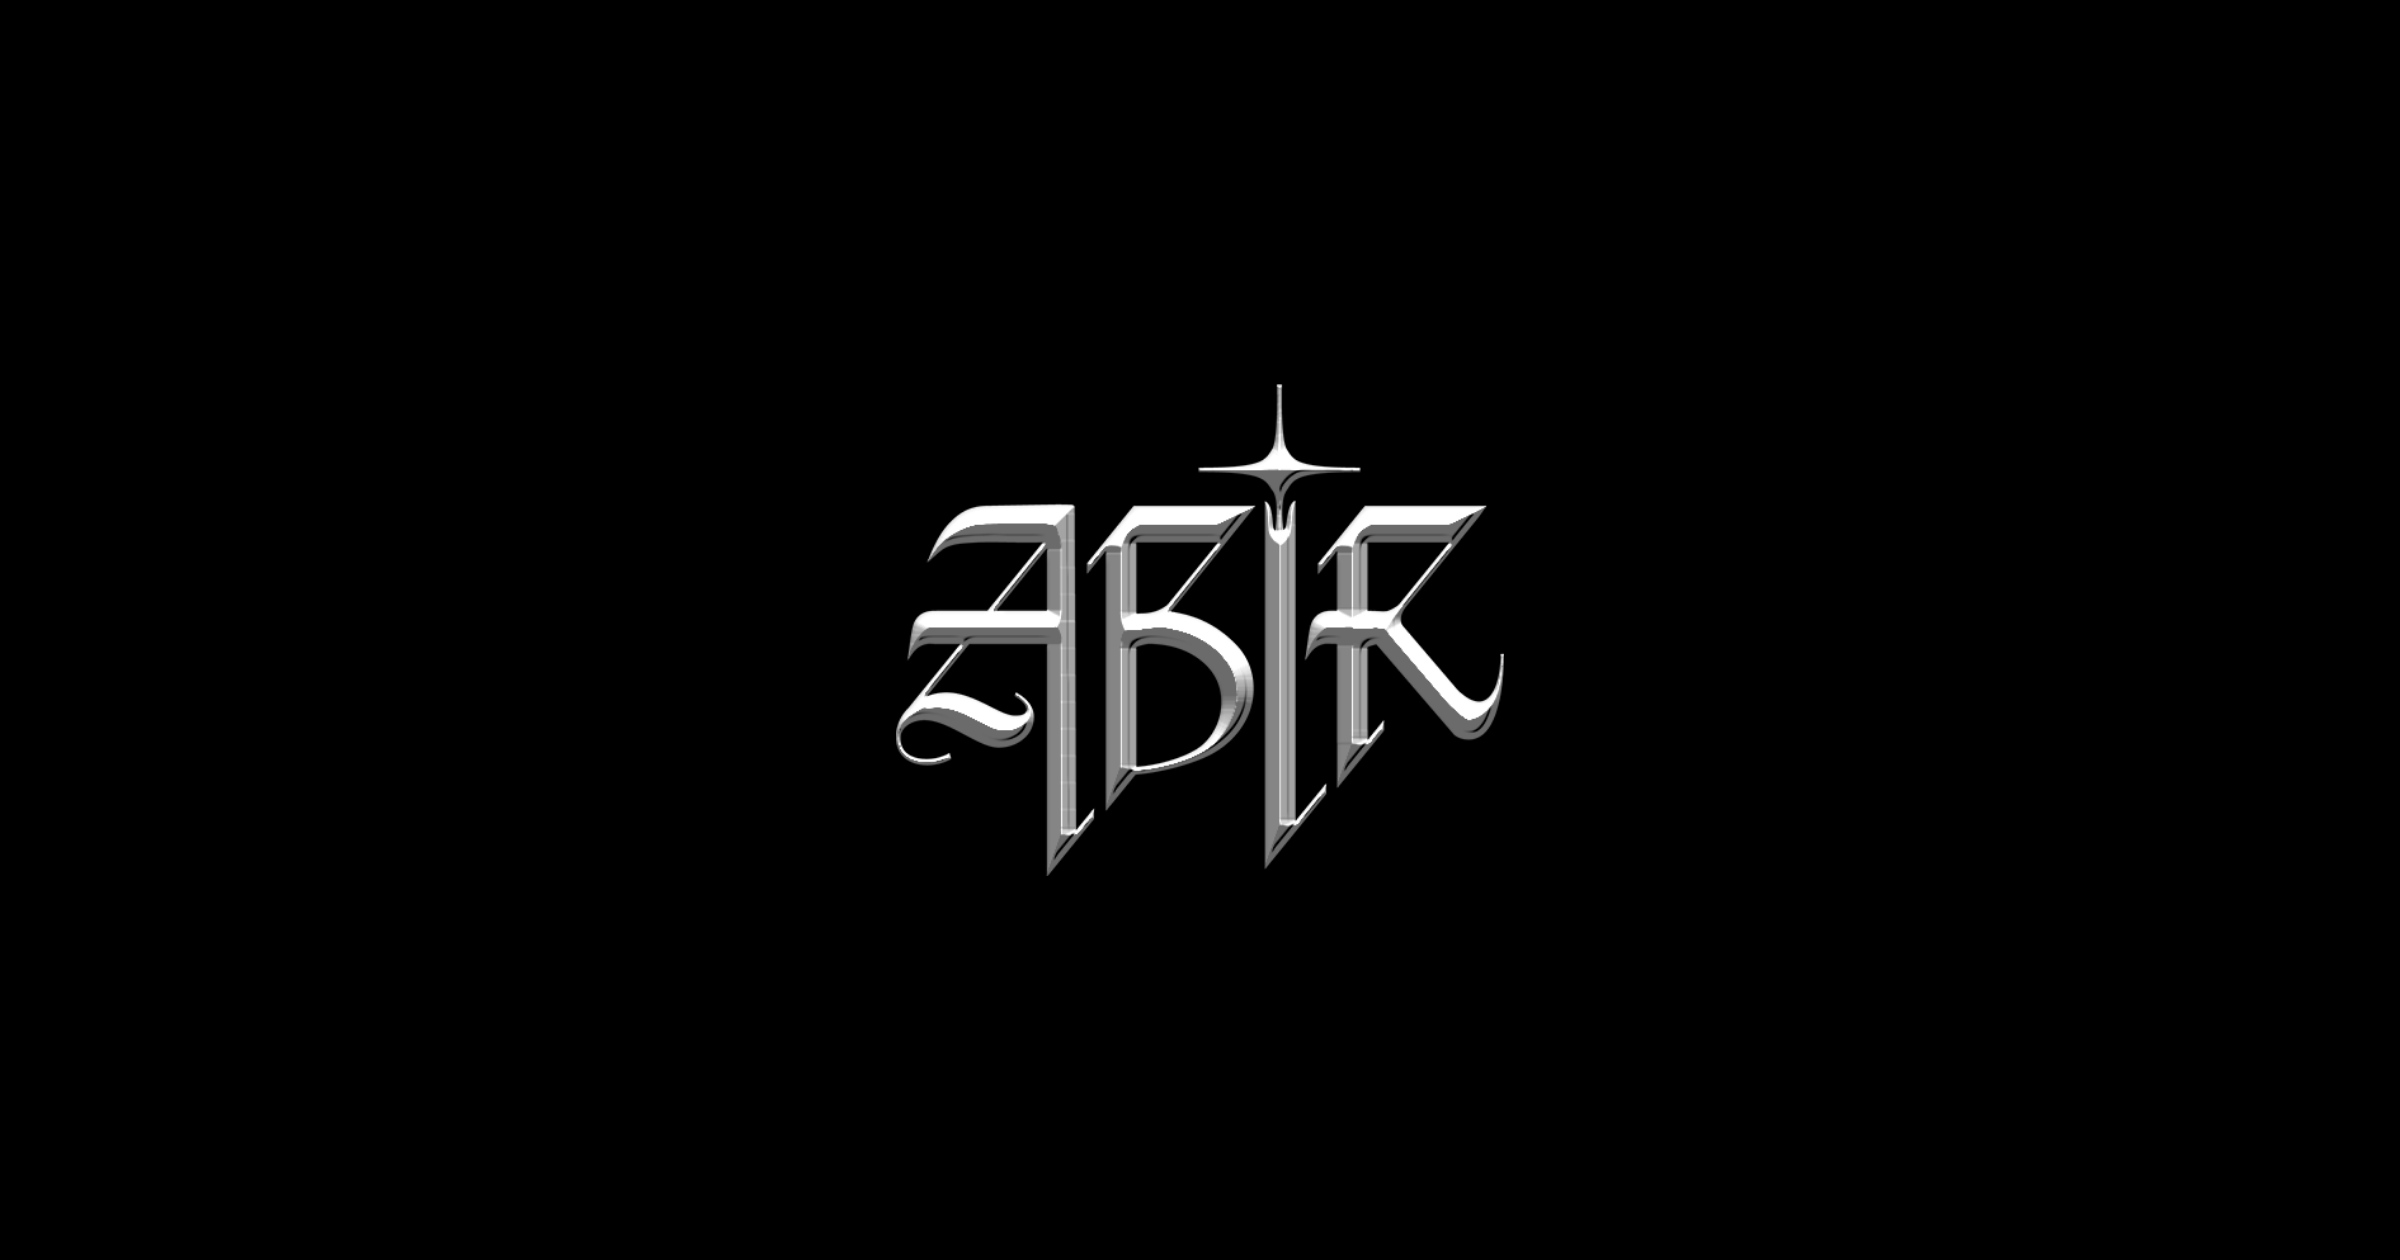 ABIR logo